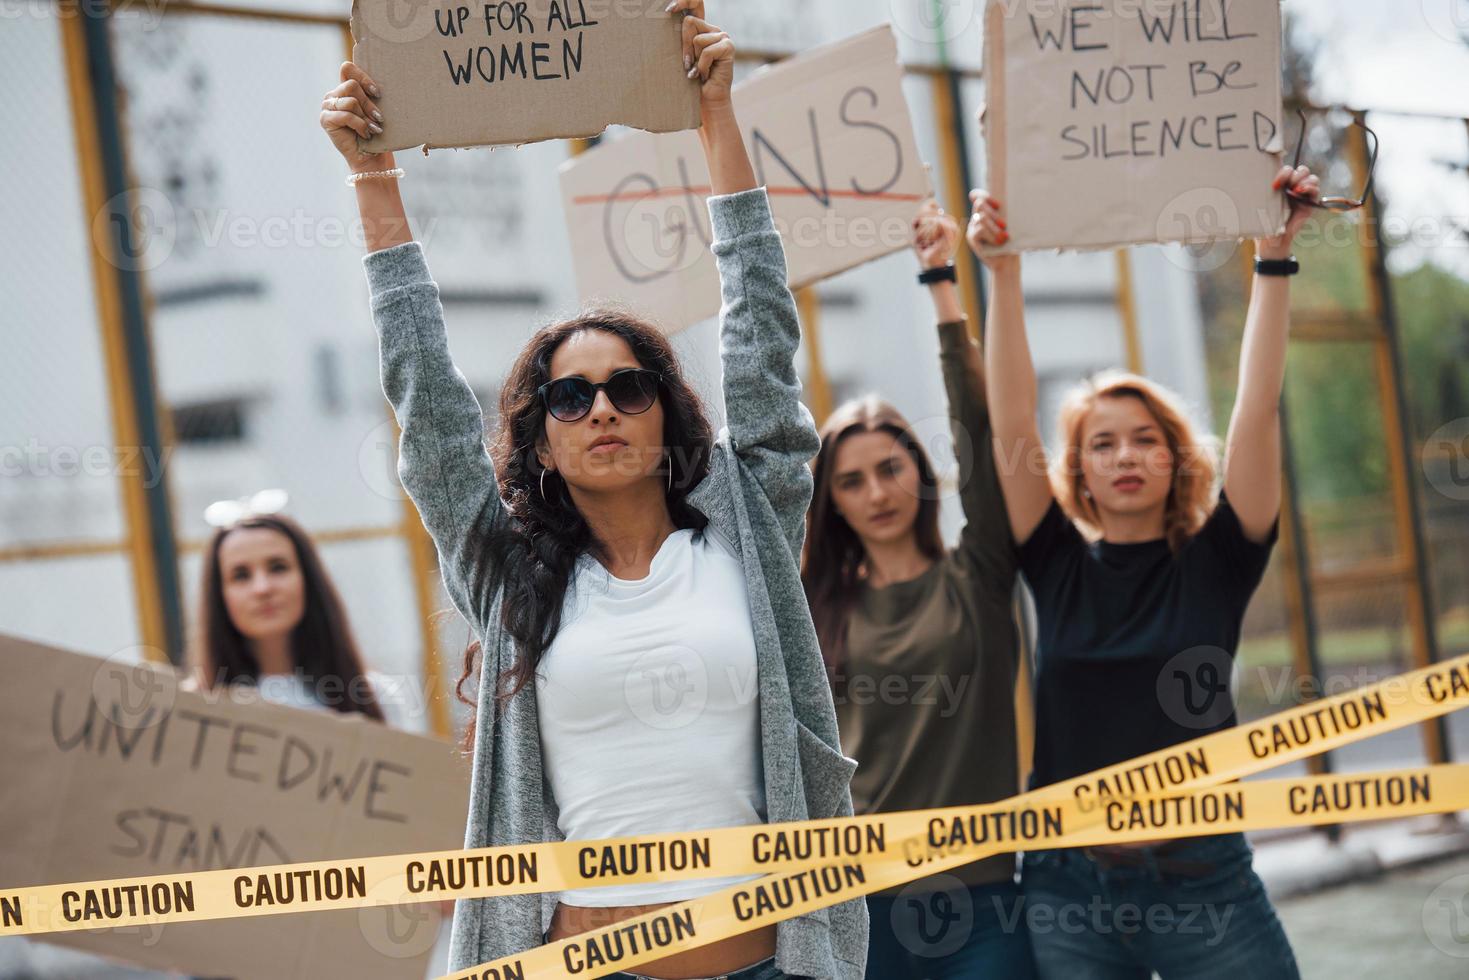 democratie in europese landen. groep feministische vrouwen protesteert buiten voor hun rechten foto